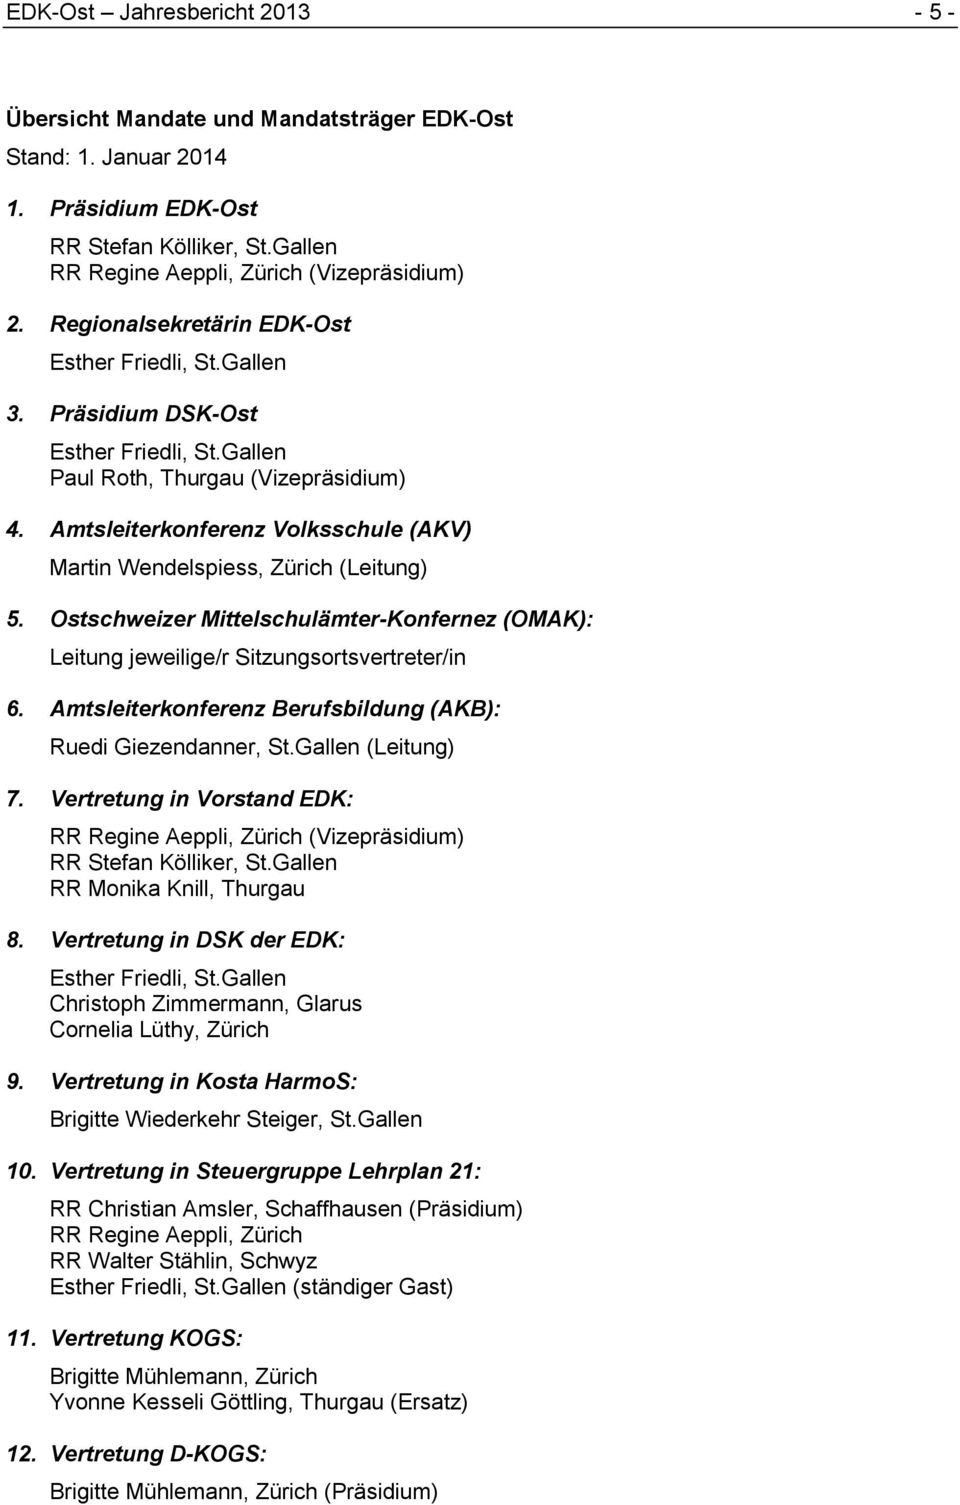 Ostschweizer Mittelschulämter-Konfernez (OMAK): Leitung jeweilige/r Sitzungsortsvertreter/in 6. Amtsleiterkonferenz Berufsbildung (AKB): Ruedi Giezendanner, St.Gallen (Leitung) 7.